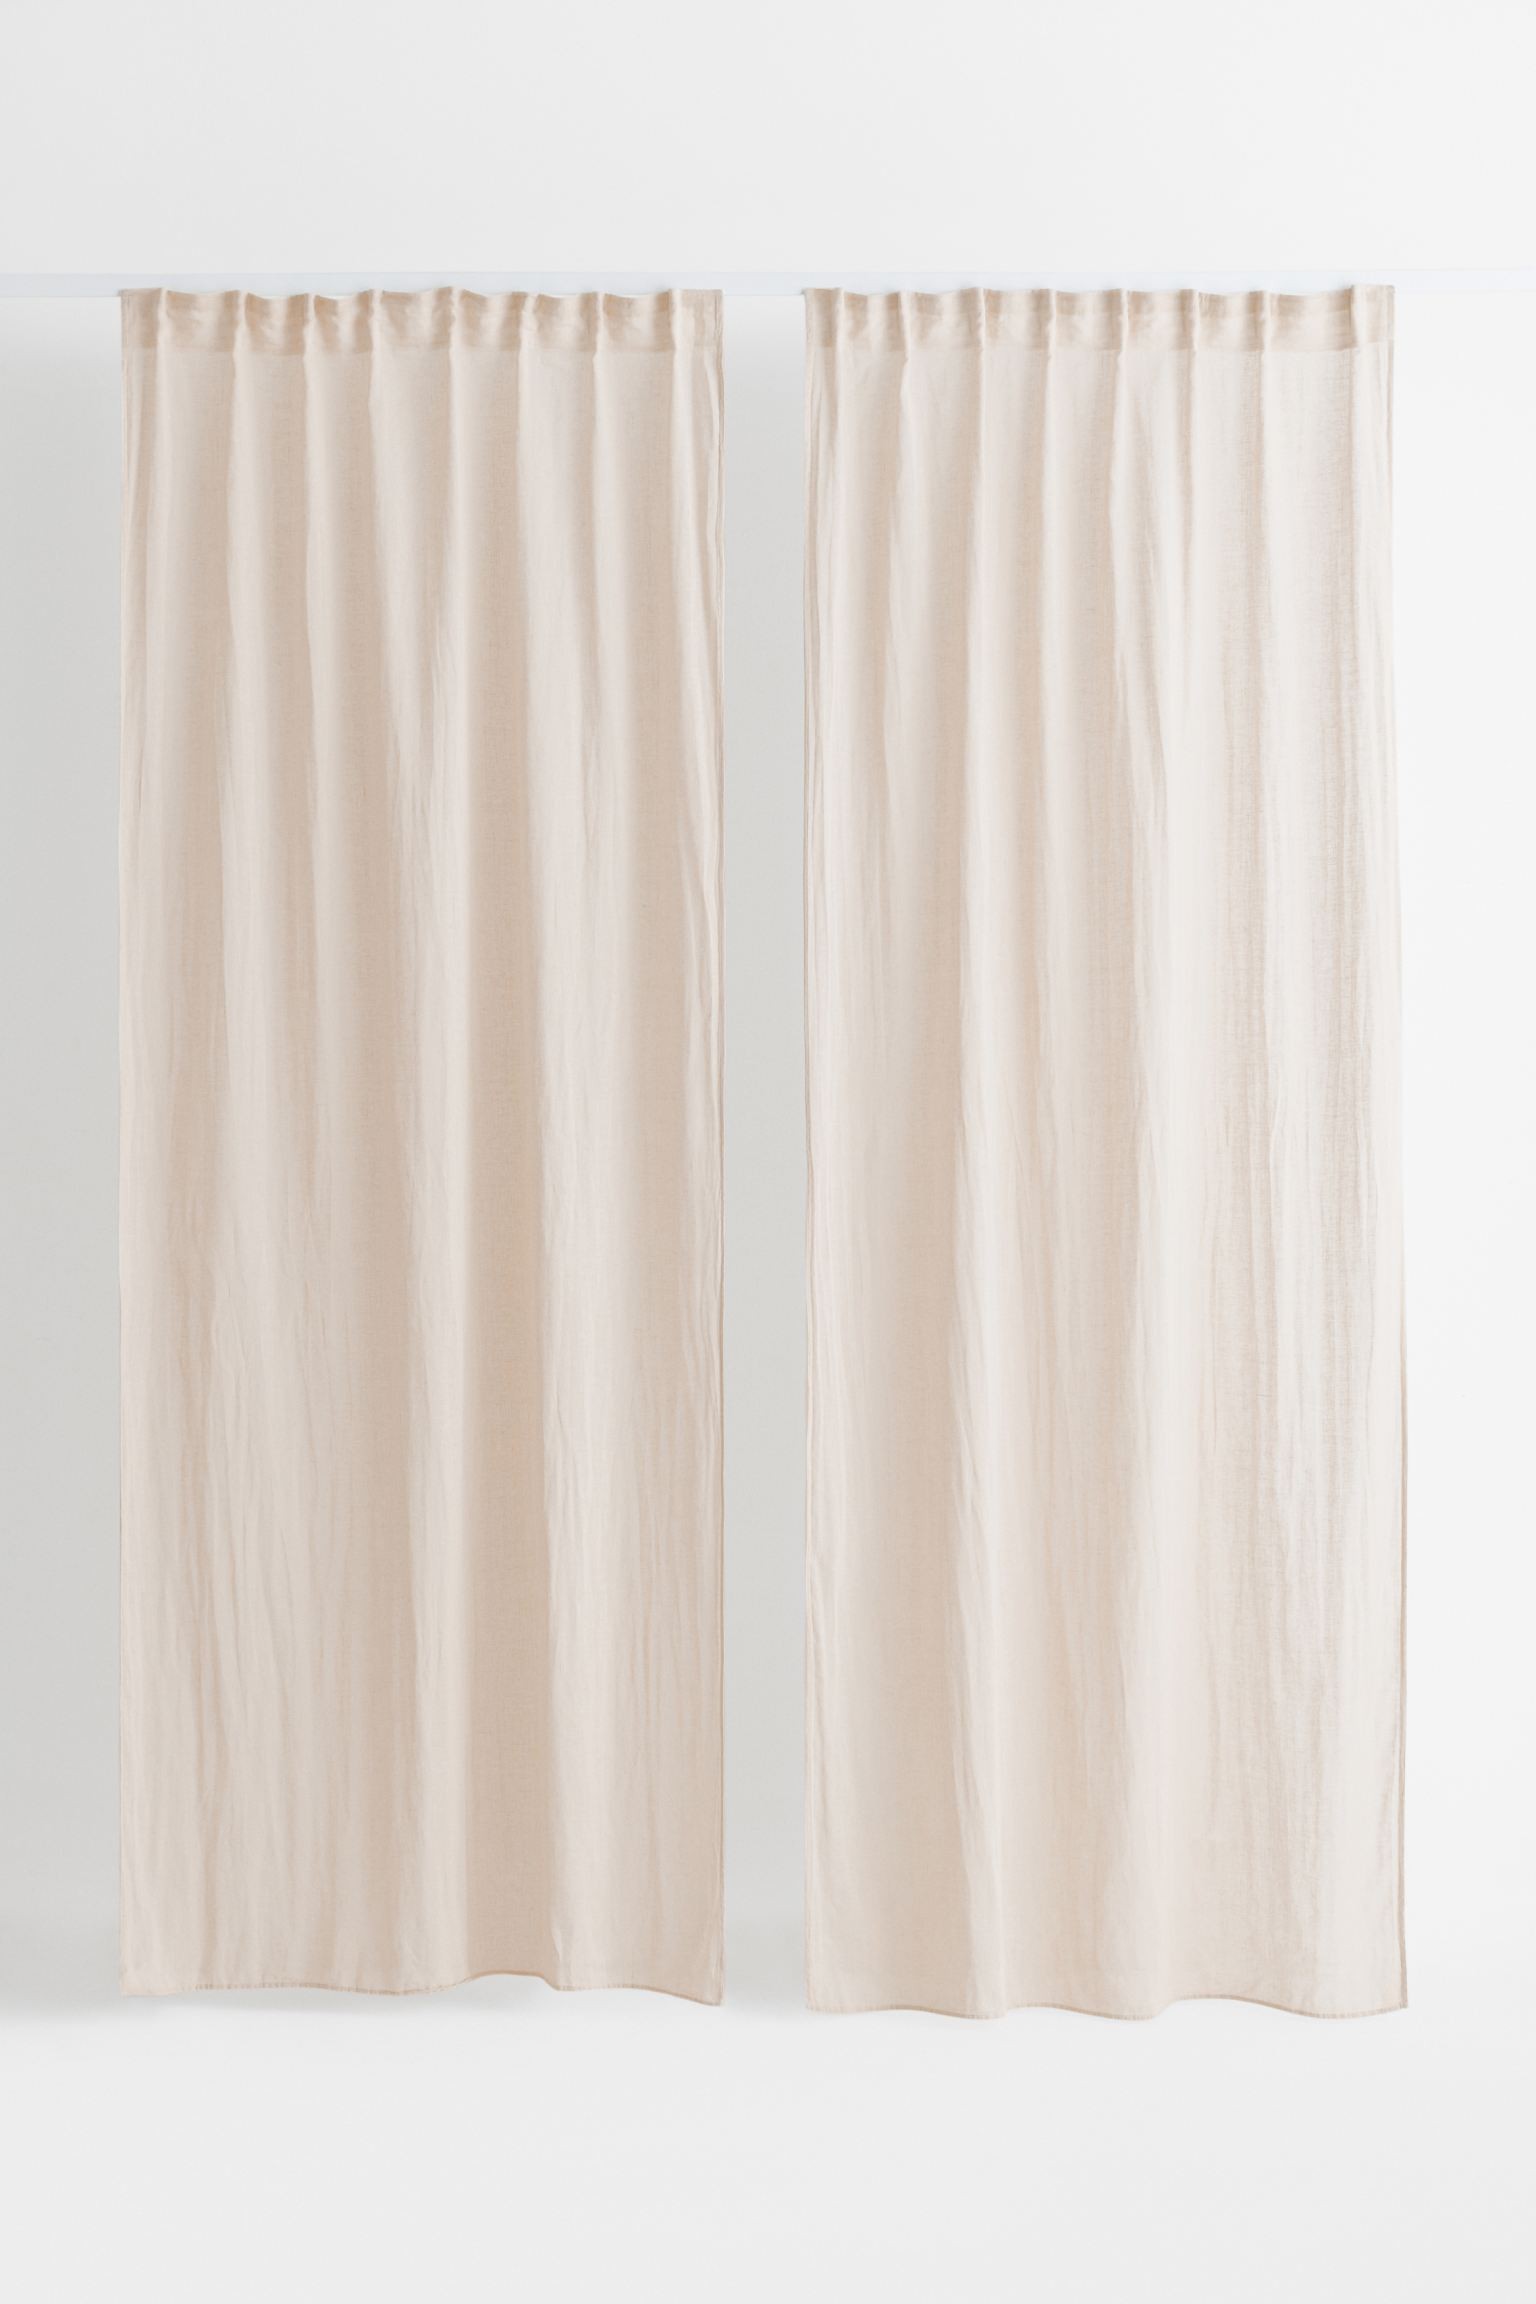 Многофункциональная штора из смесовой льняной ткани, 2 шт., светло-бежевый, 120x250